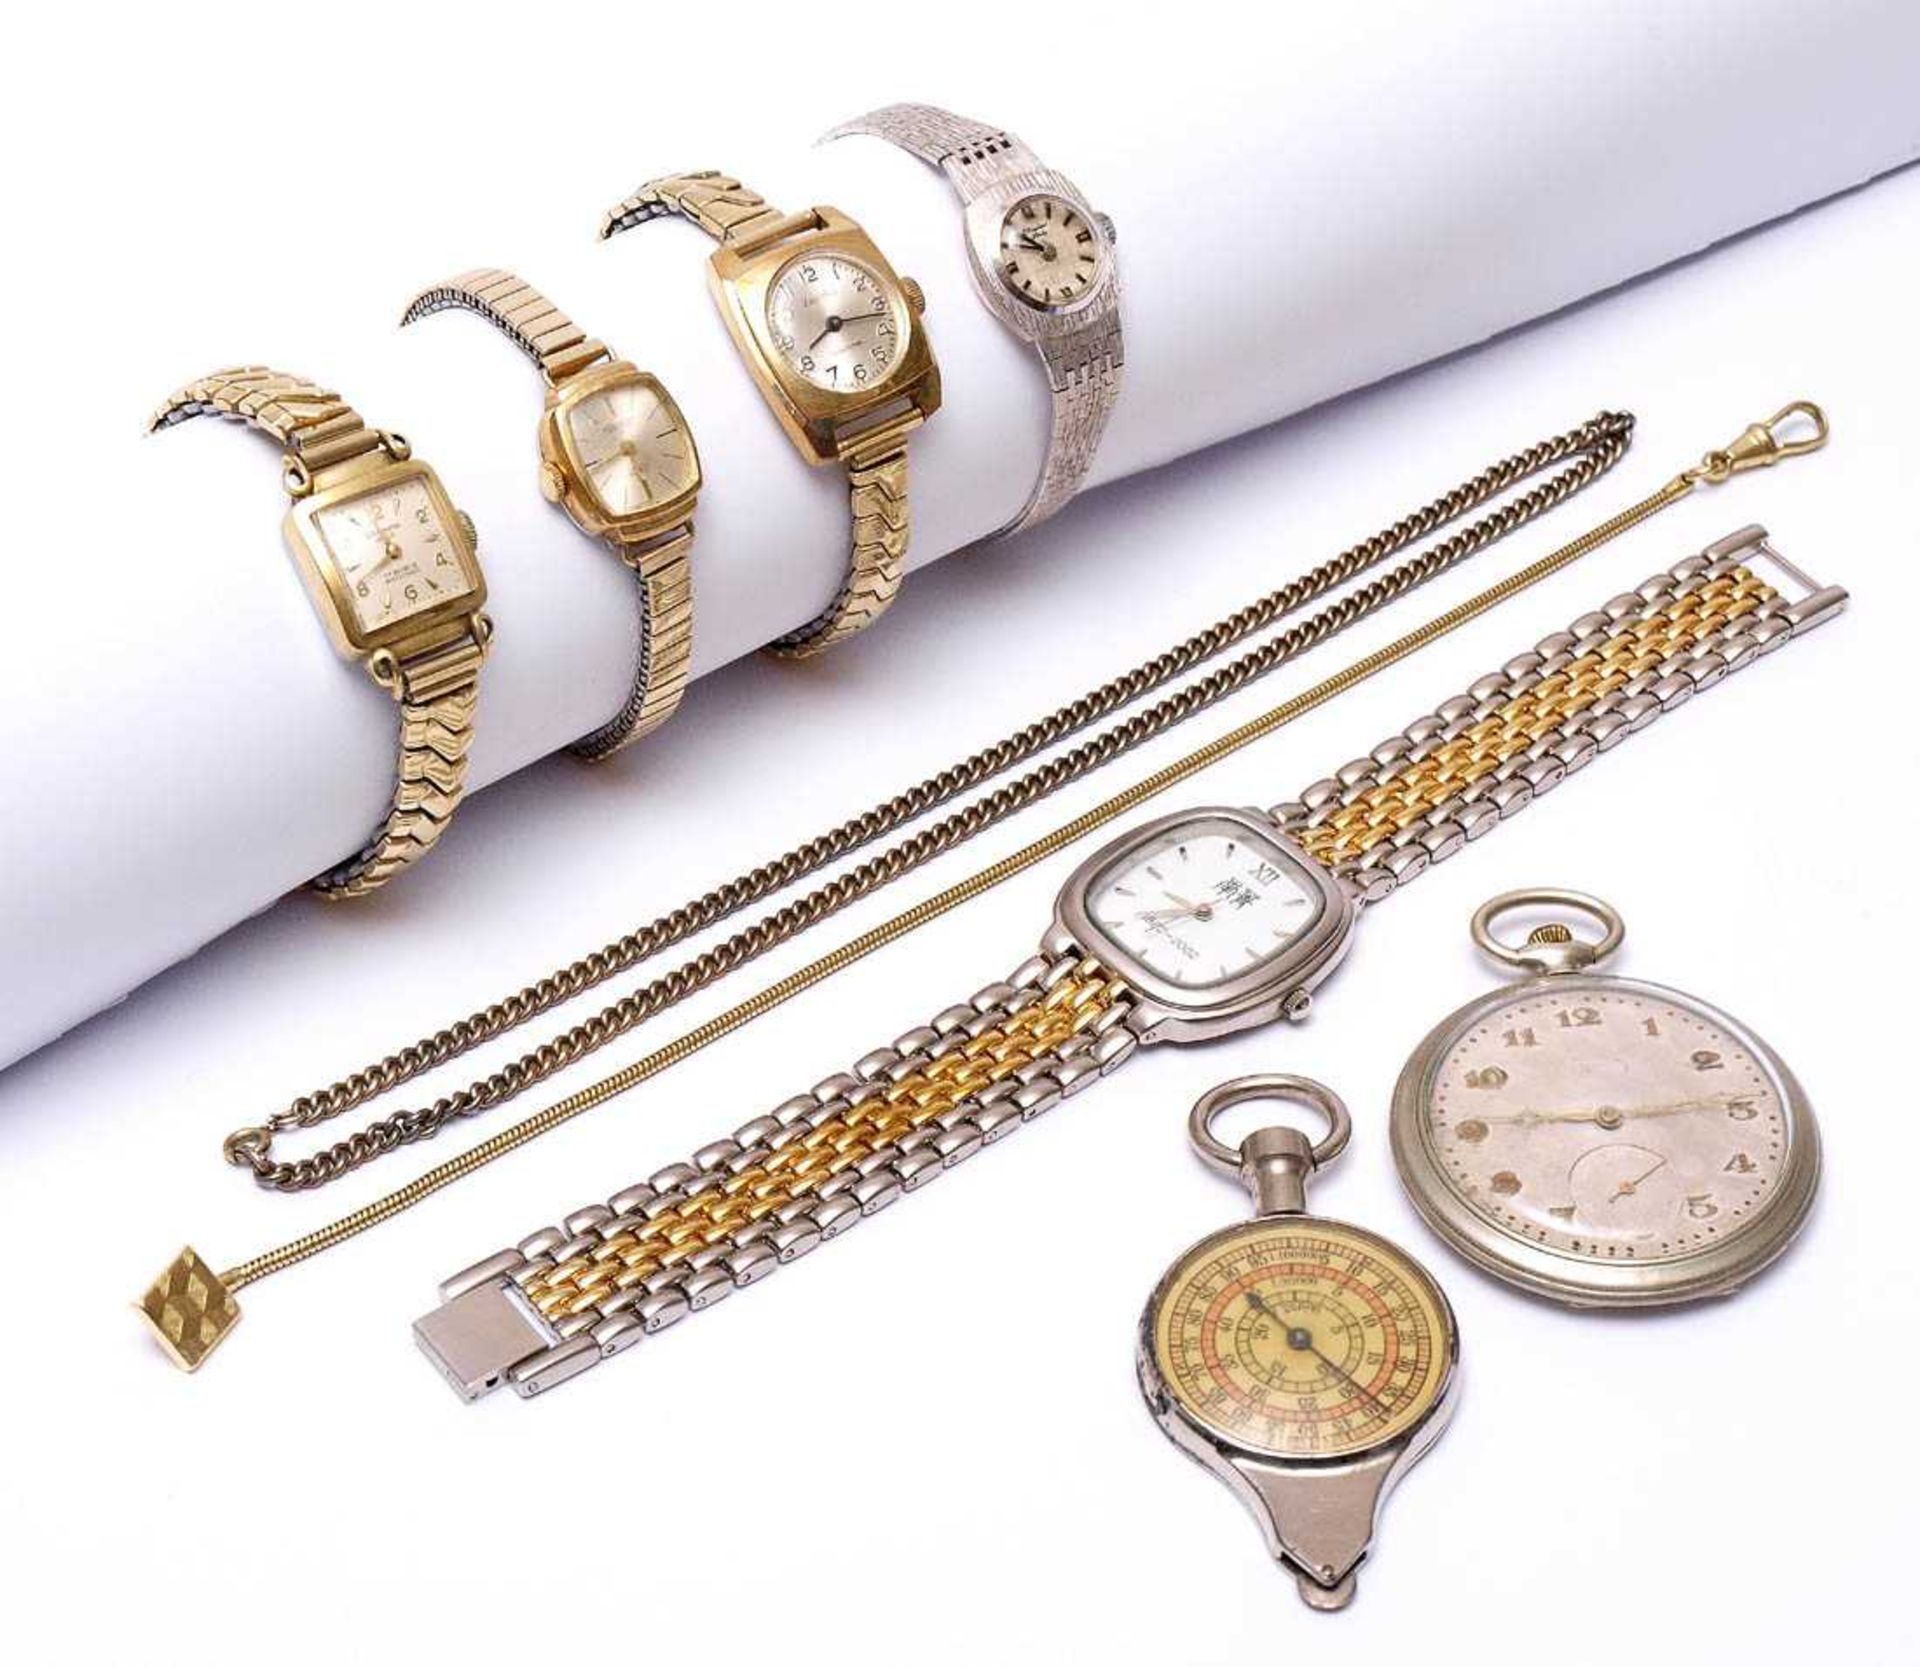 KonvolutVier Damenarmbanduhren, eine Herrenarmbanduhr, eine Taschenuhr und ein Kartenmetermaß.